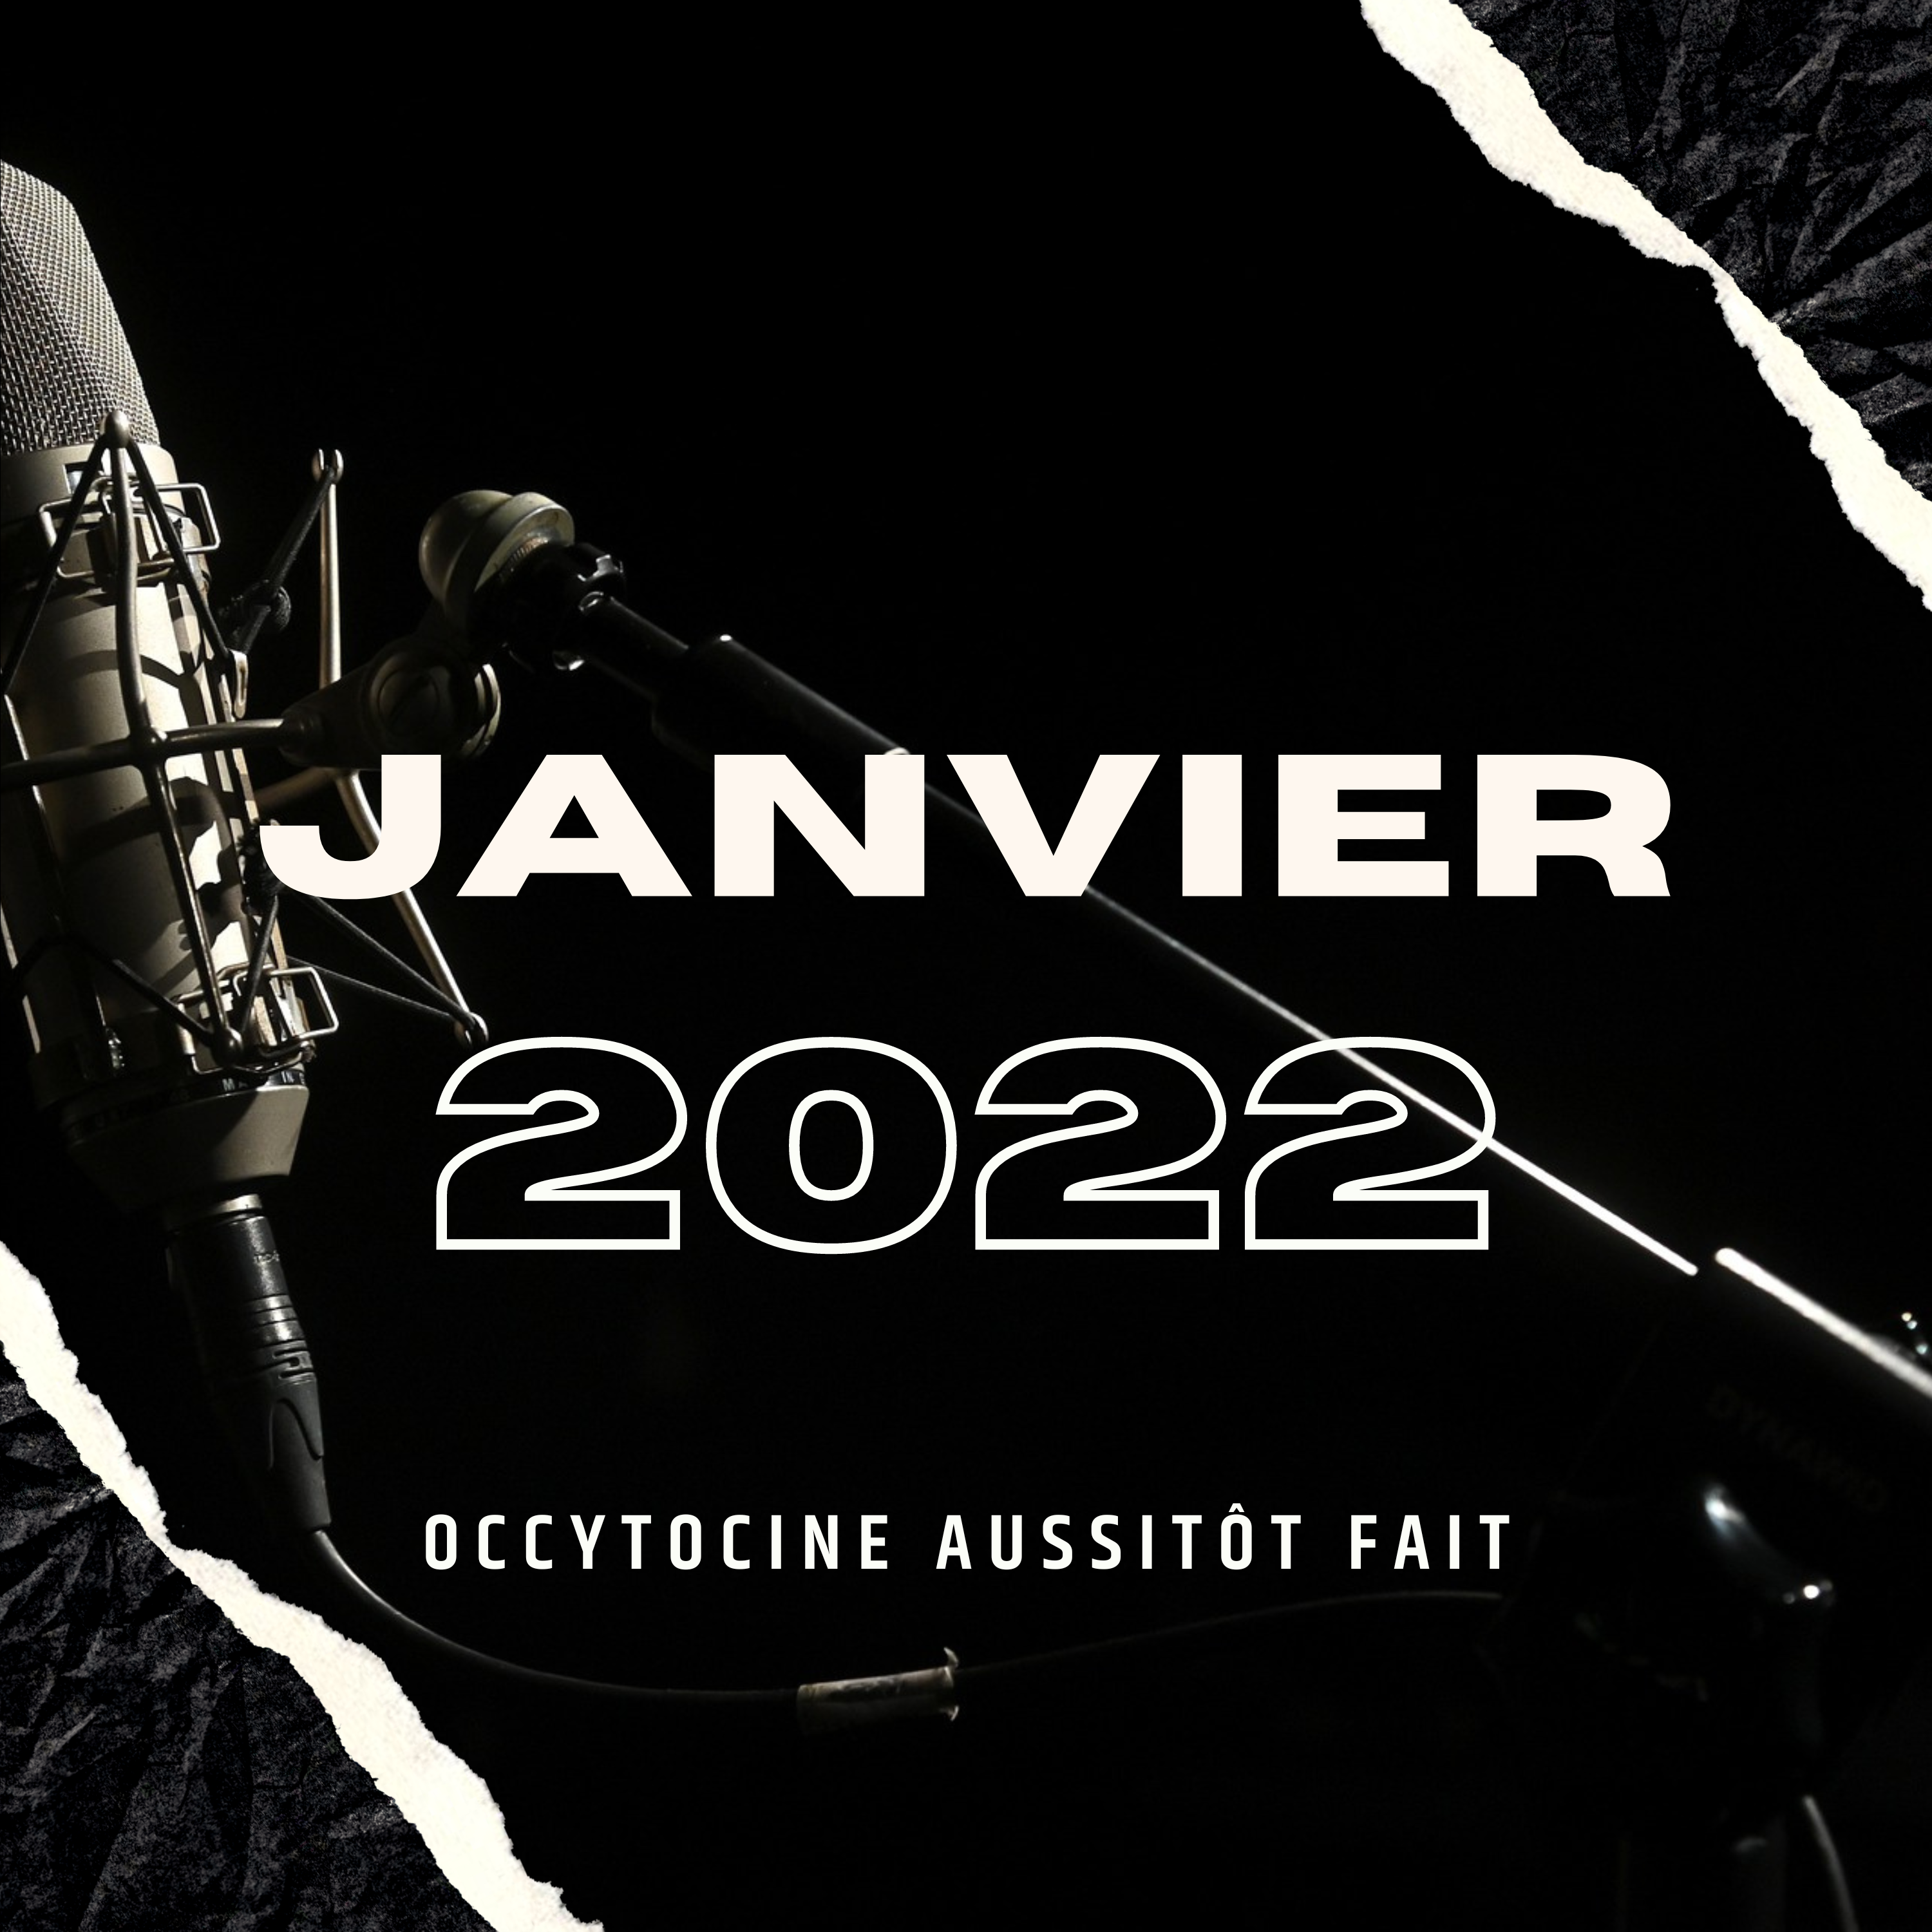 Janvier 2022 — Ocytocine aussitôt fait